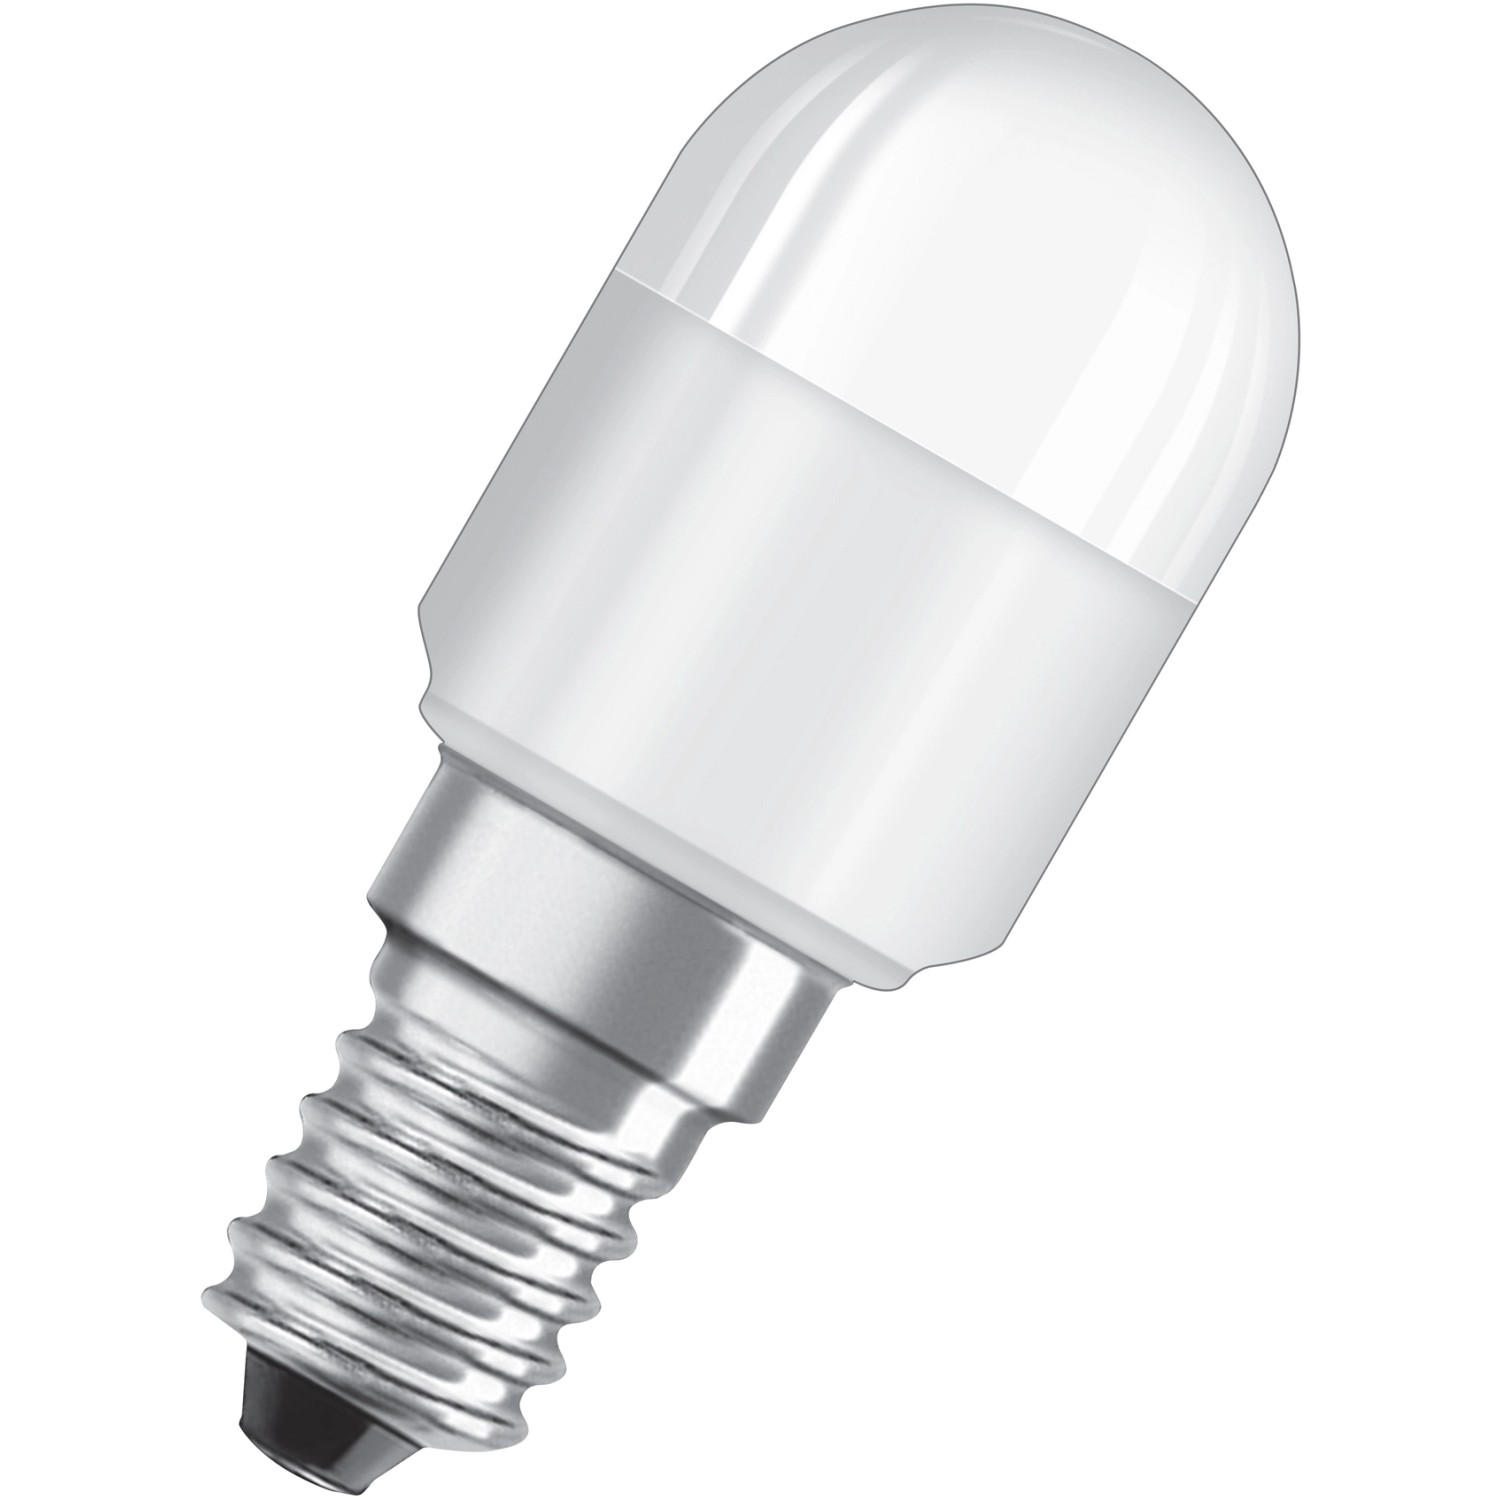 Osram LED-Lampe Classic T-Form Matt E14, 2,3W 200 lm Warmweiß